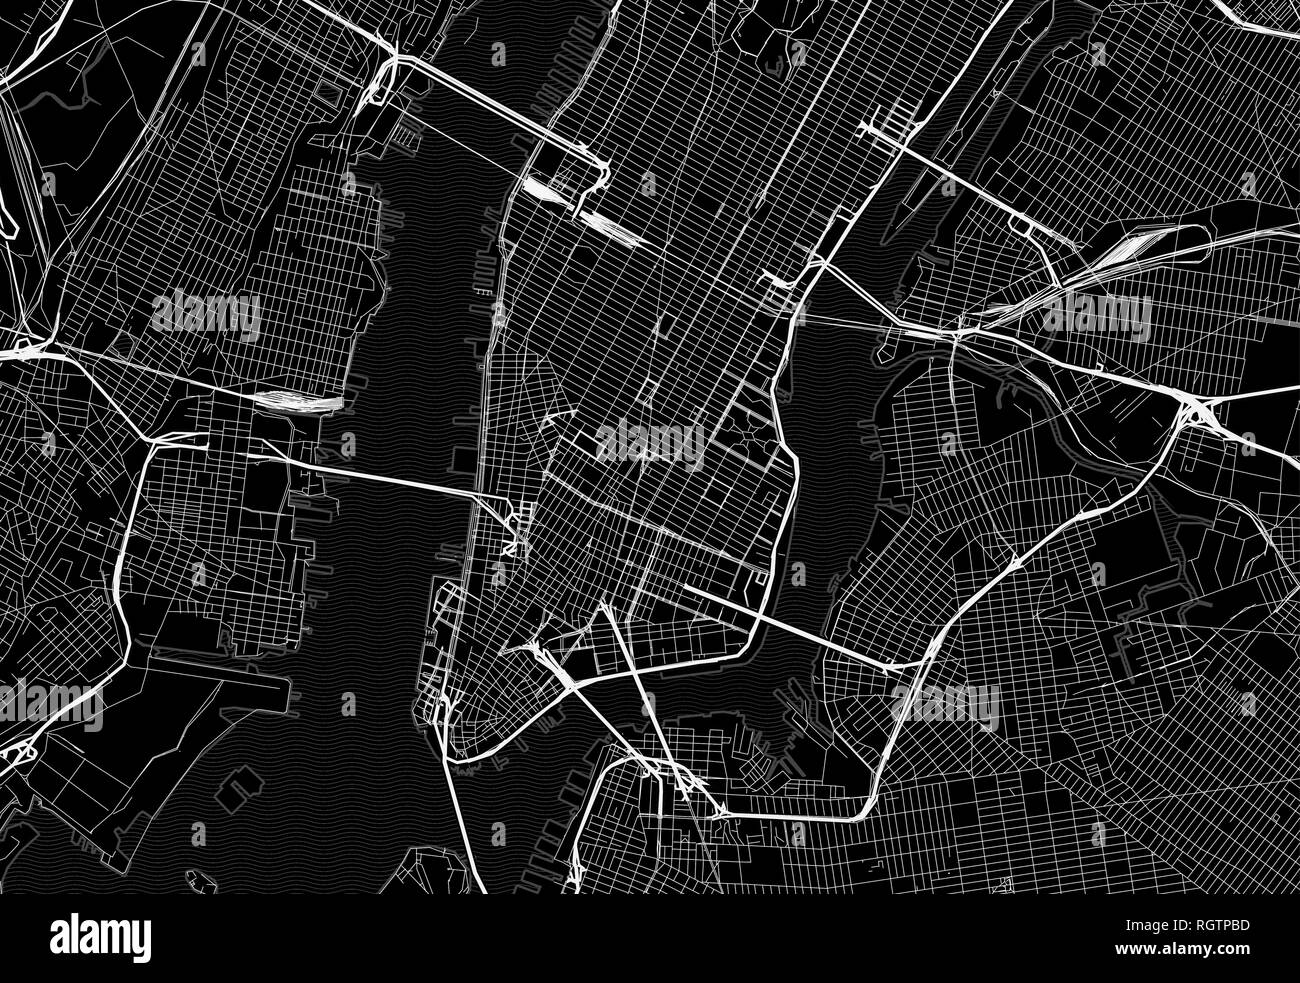 Carte noire du centre-ville de New York. Ce vecteur artmap est créé comme un arrière-plan décoratif ou un signe de voyage unique. Illustration de Vecteur